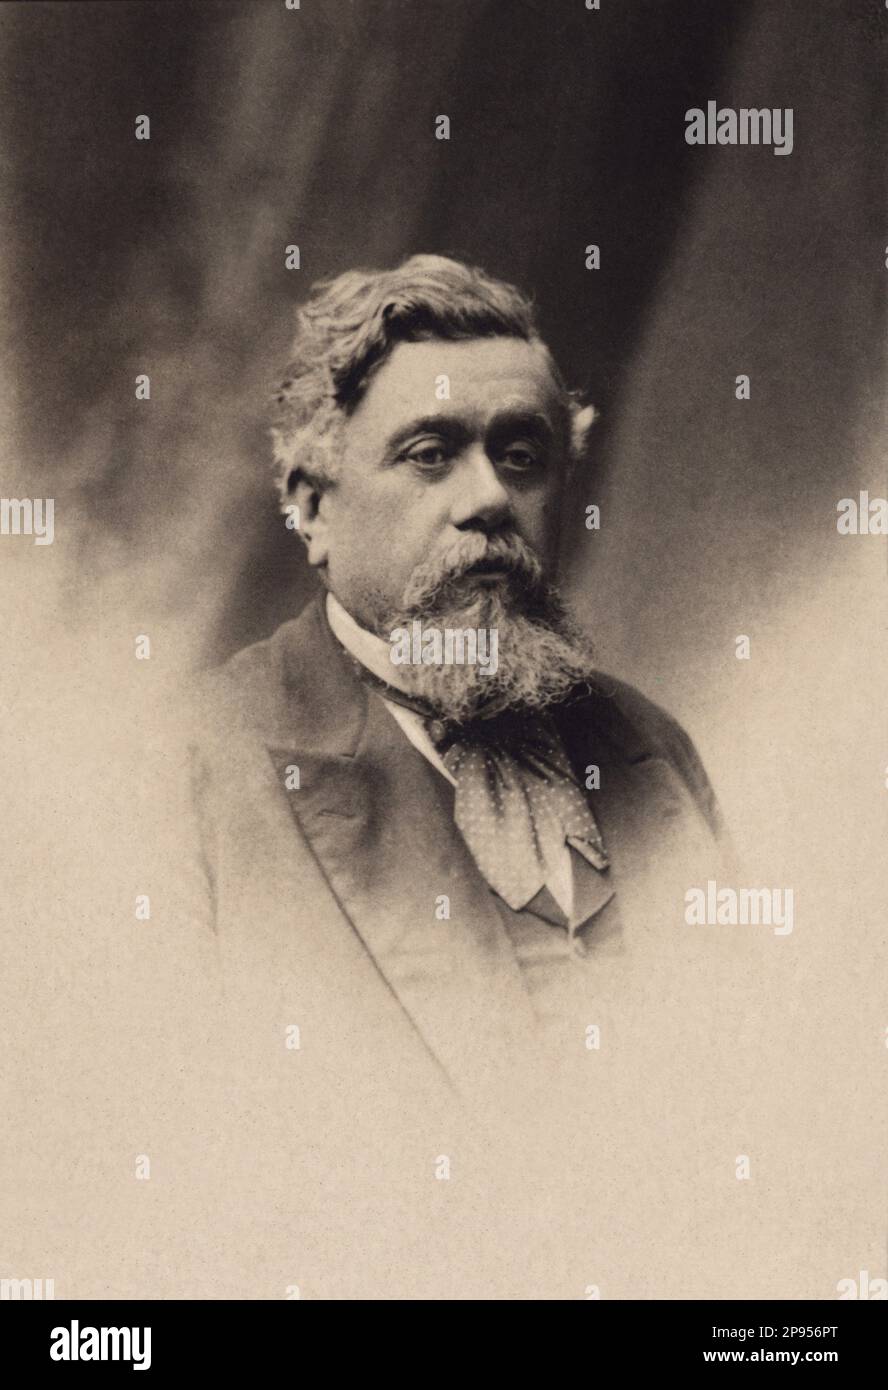 1890 c, FRANCE : Clement Armand FALLIERES ( 1841 - 1931 ) was a French statesman and french President of Republic from 1906 to 1913 .  - POLITICO - POLITICA - POLITIC  - foto storiche - foto storica - portrait - ritratto  - barba - beard  - tie bow - cravatta - Presidente della Repubblica Francese - FRANCIA - FRANCE    ---- Archivio GBB Stock Photo